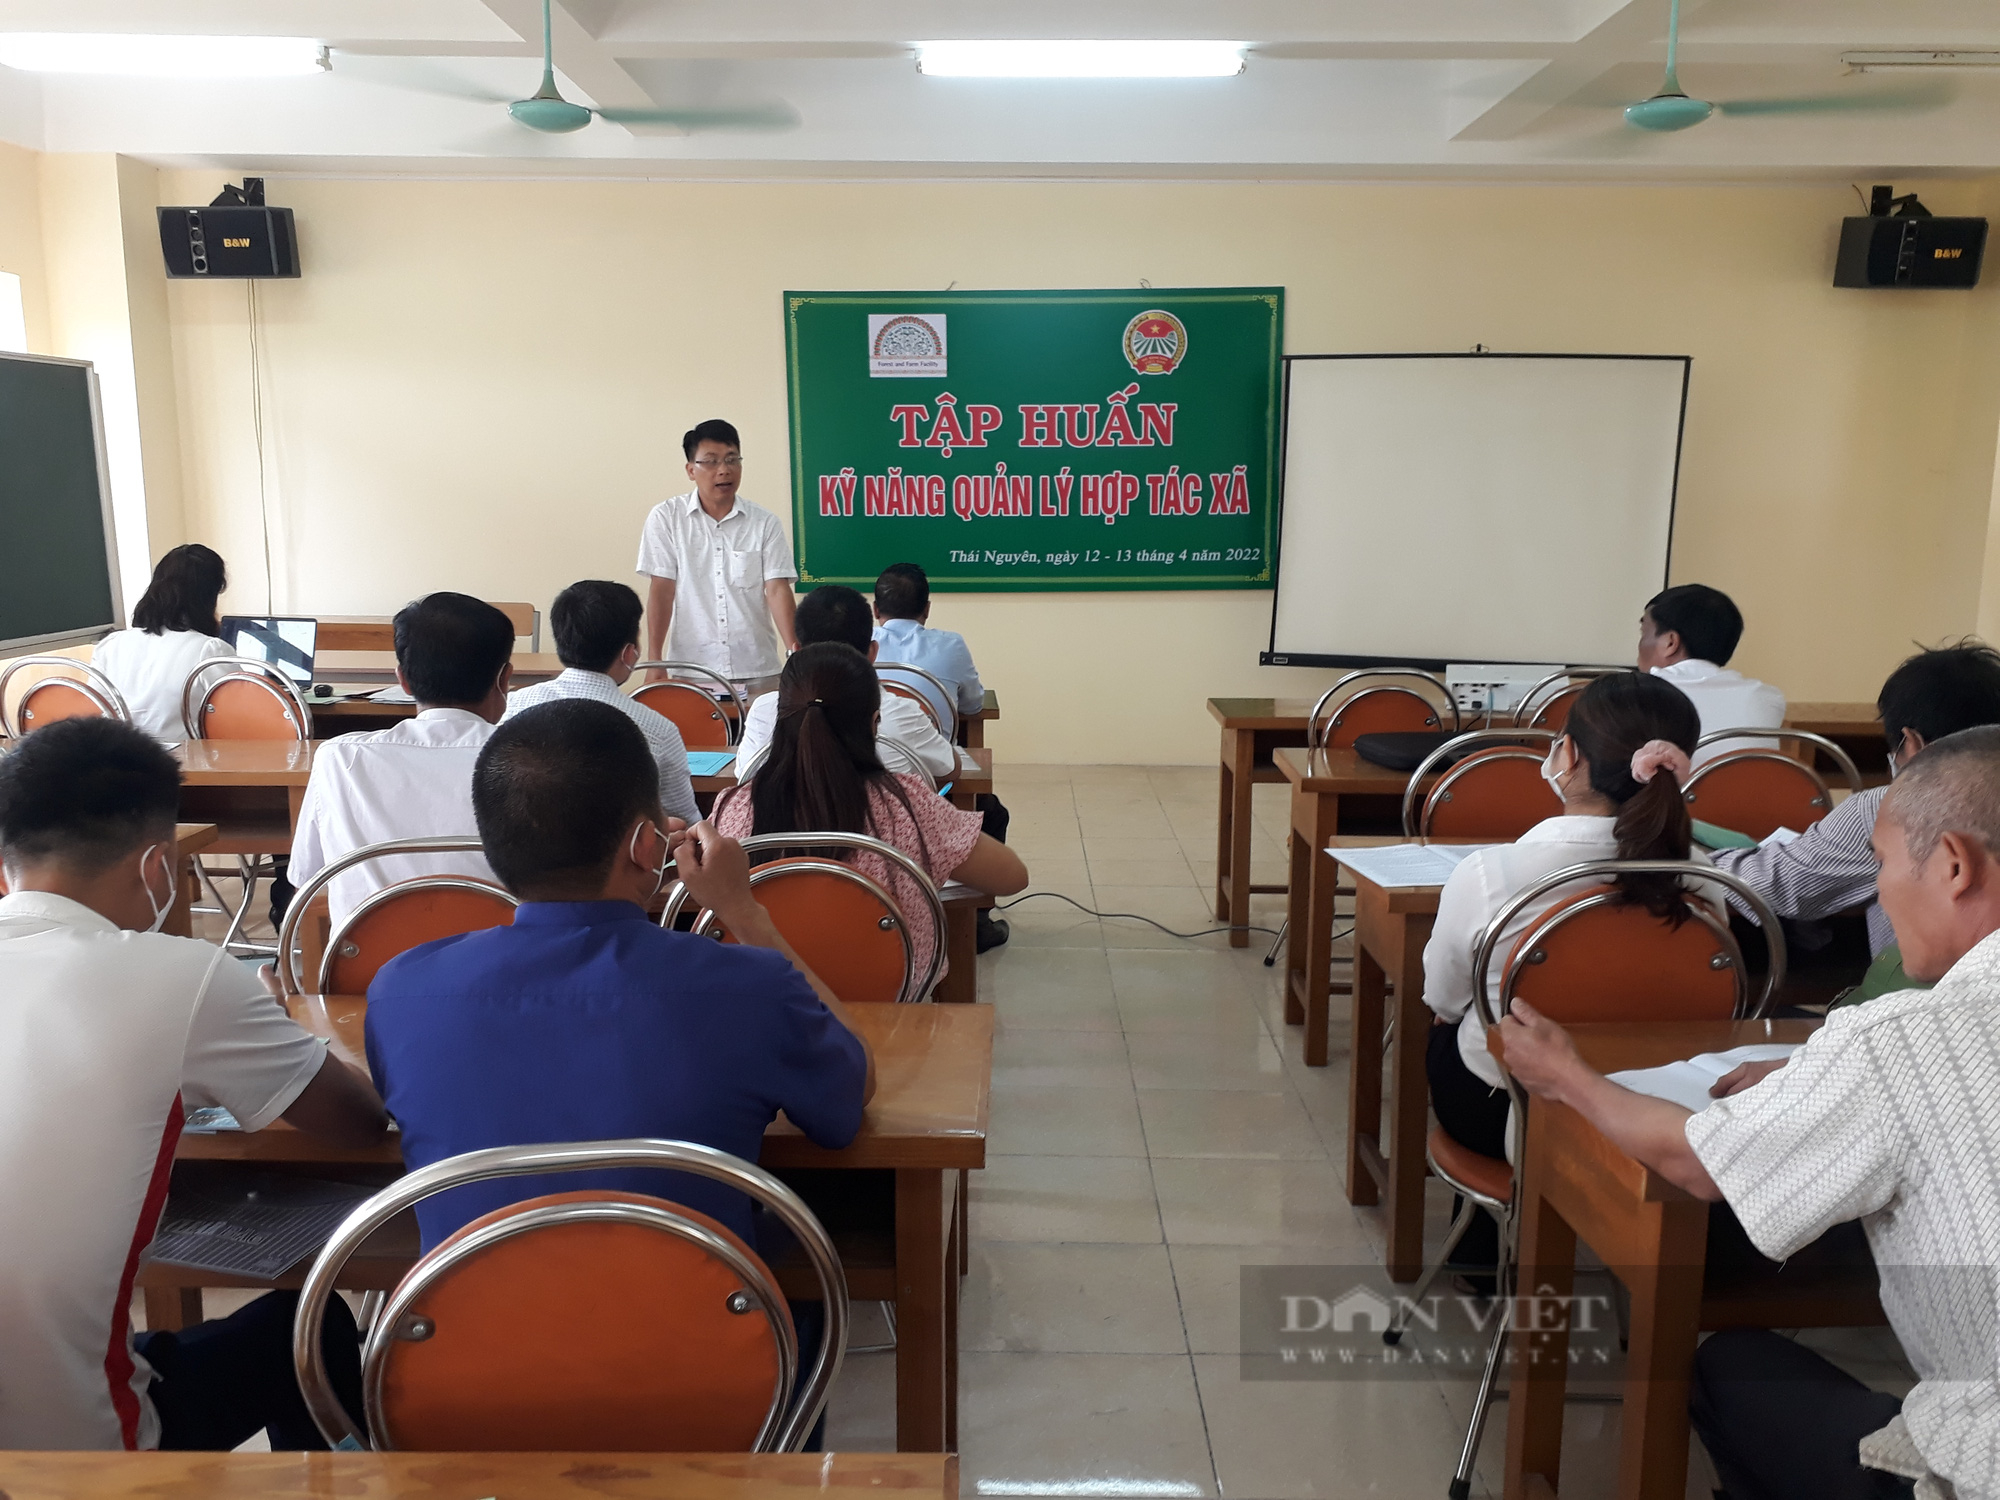 Hội nông dân Thái Nguyên phối hợp tập huấn Kỹ năng quản lý Hợp tác xã - Ảnh 1.